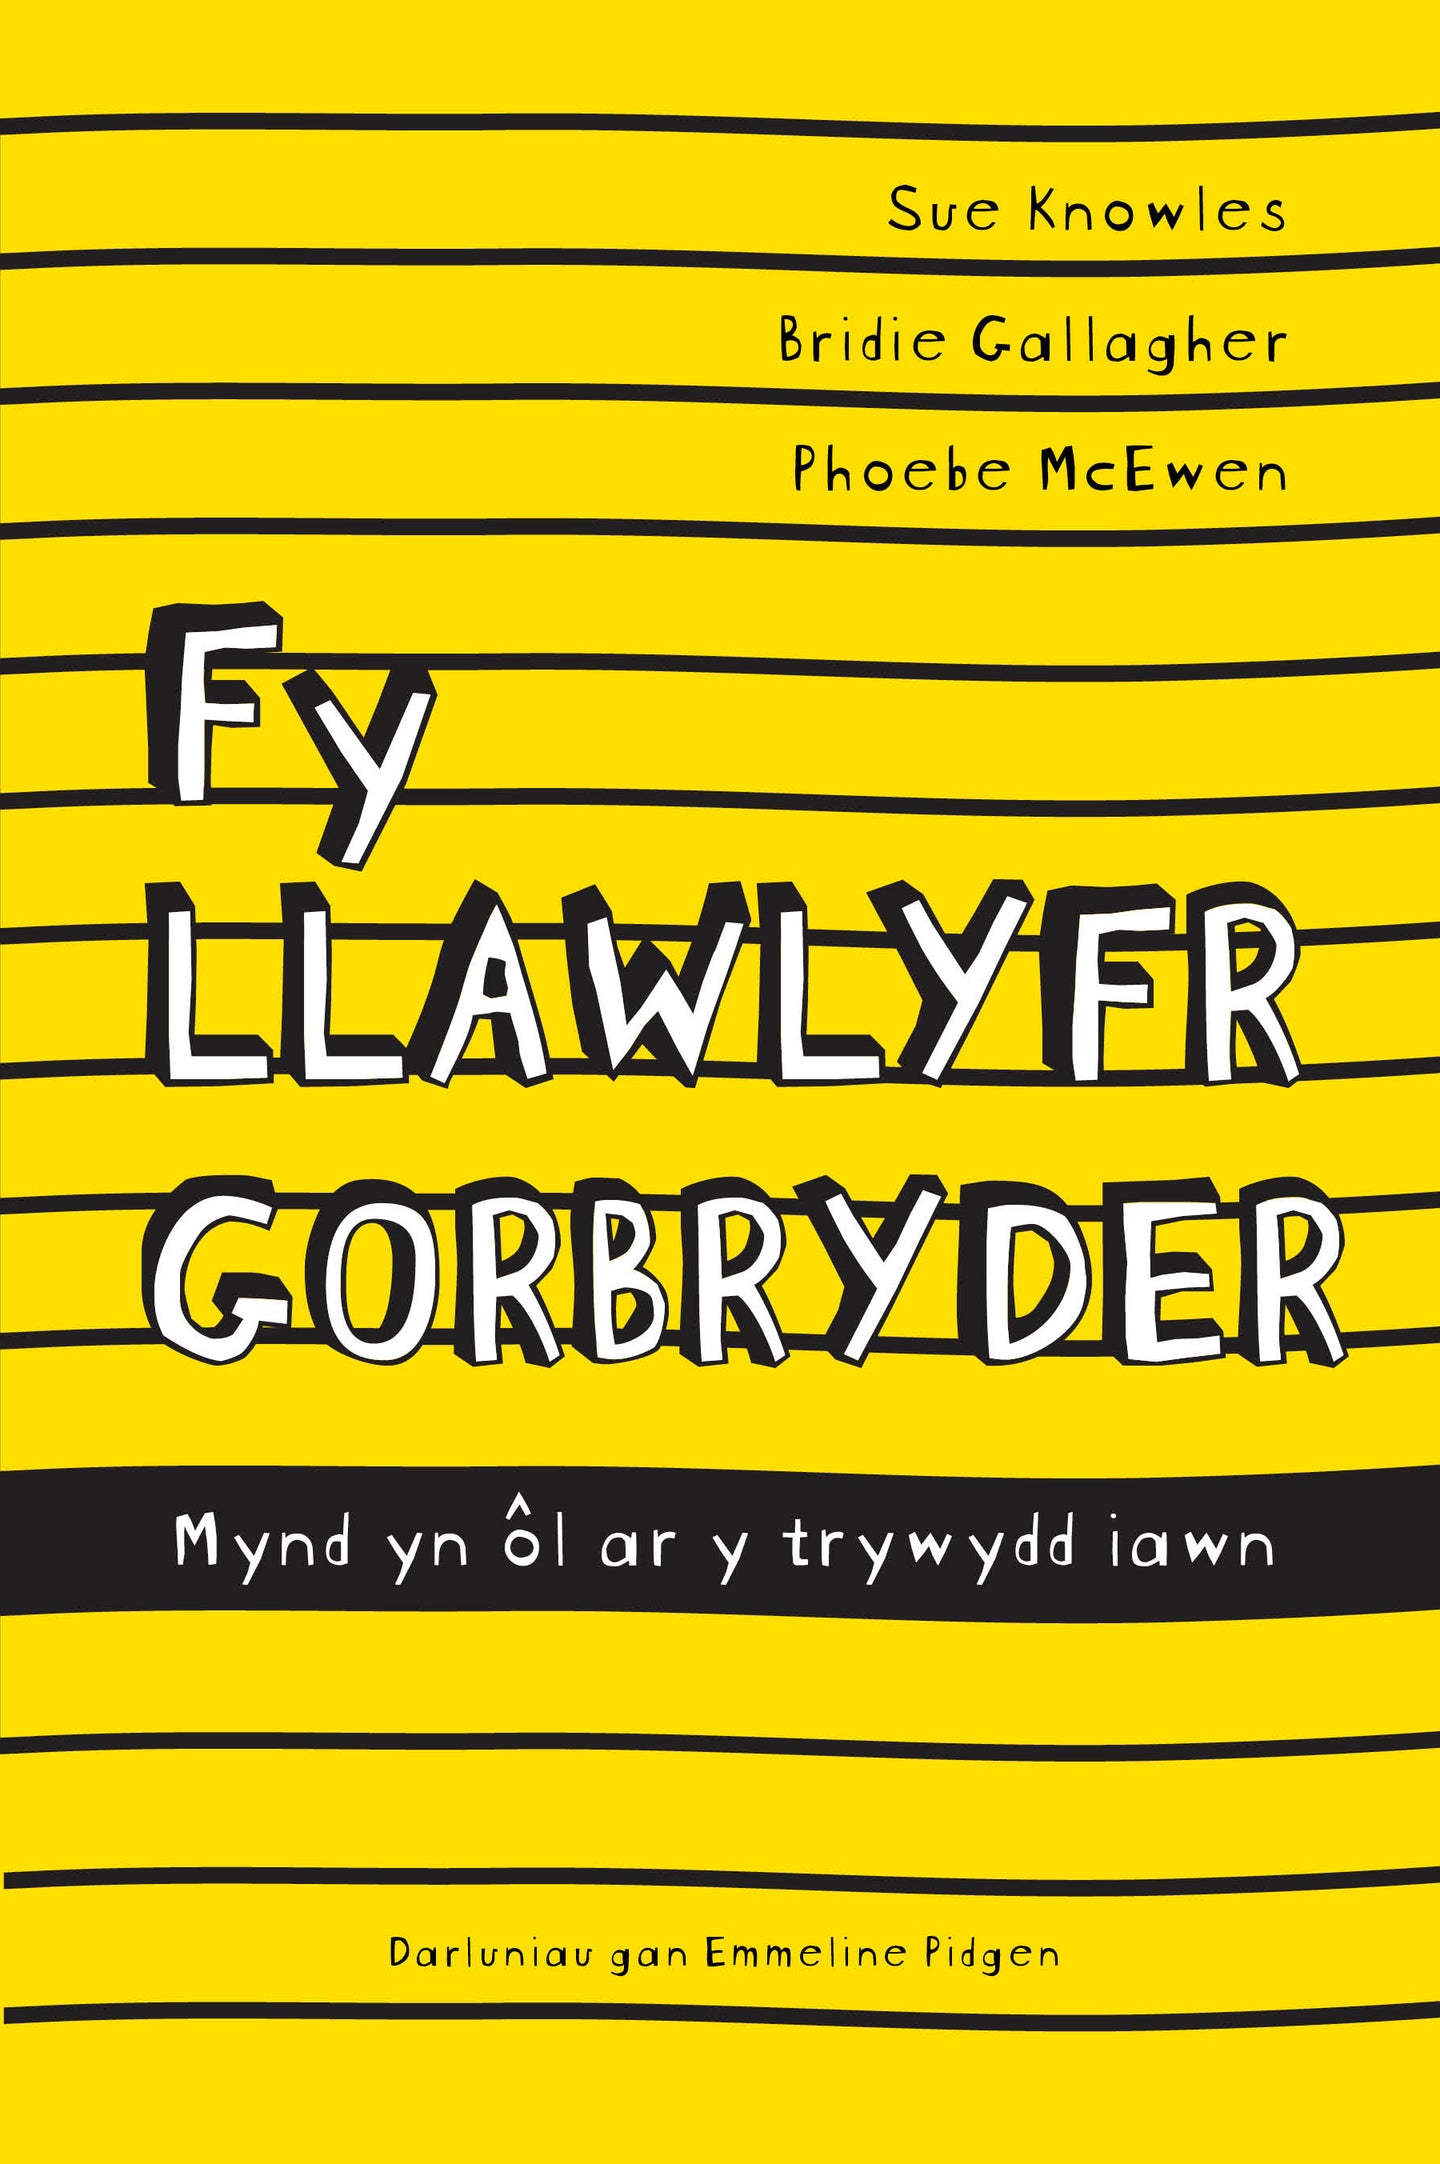 Fy Llawlyfr Gorbryder